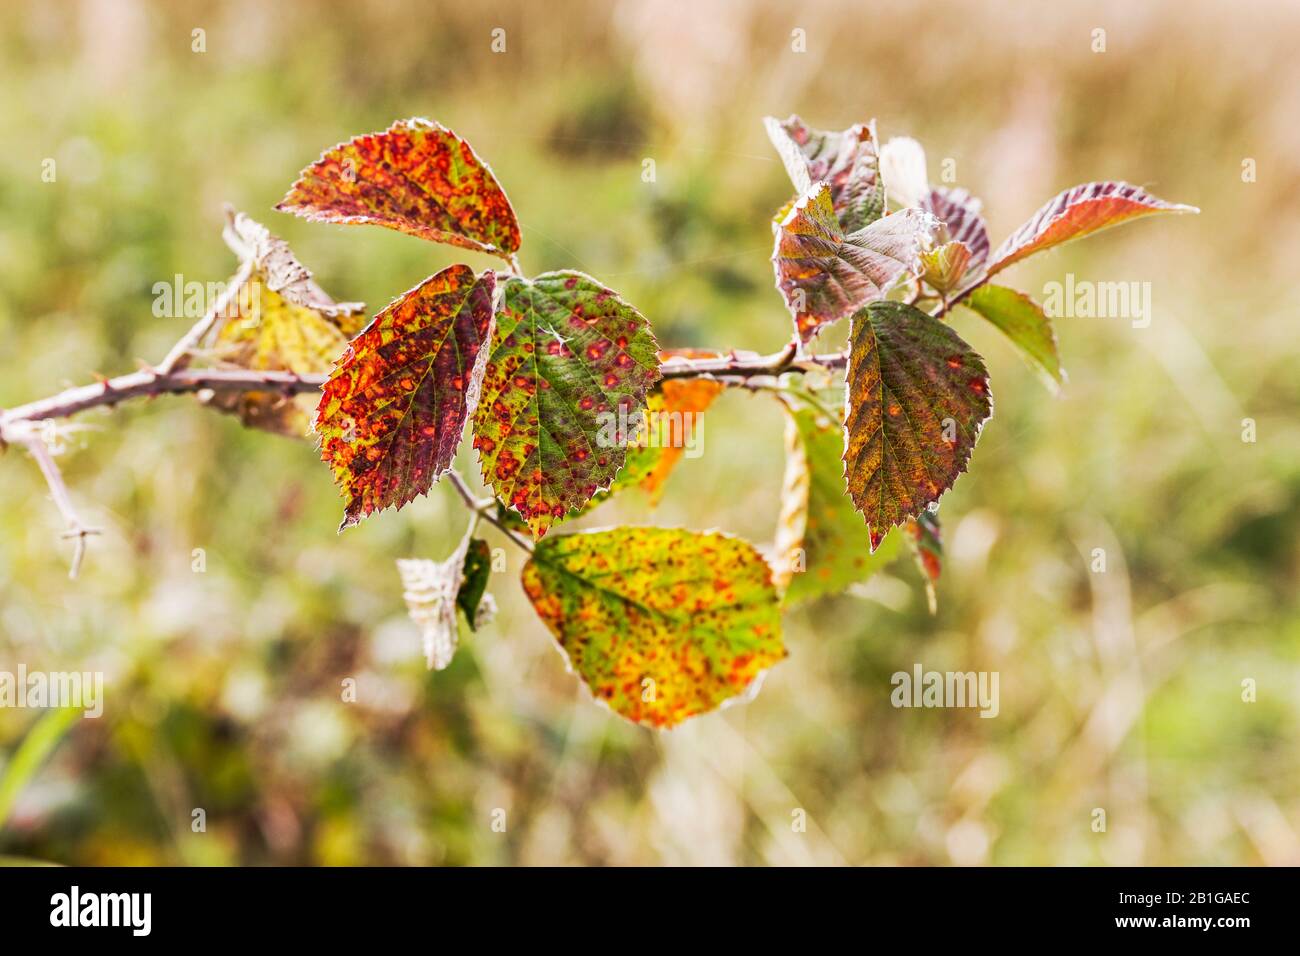 The fungal disease Phragmidium tuberculatum or leaf rust on a UK rose plant. Stock Photo